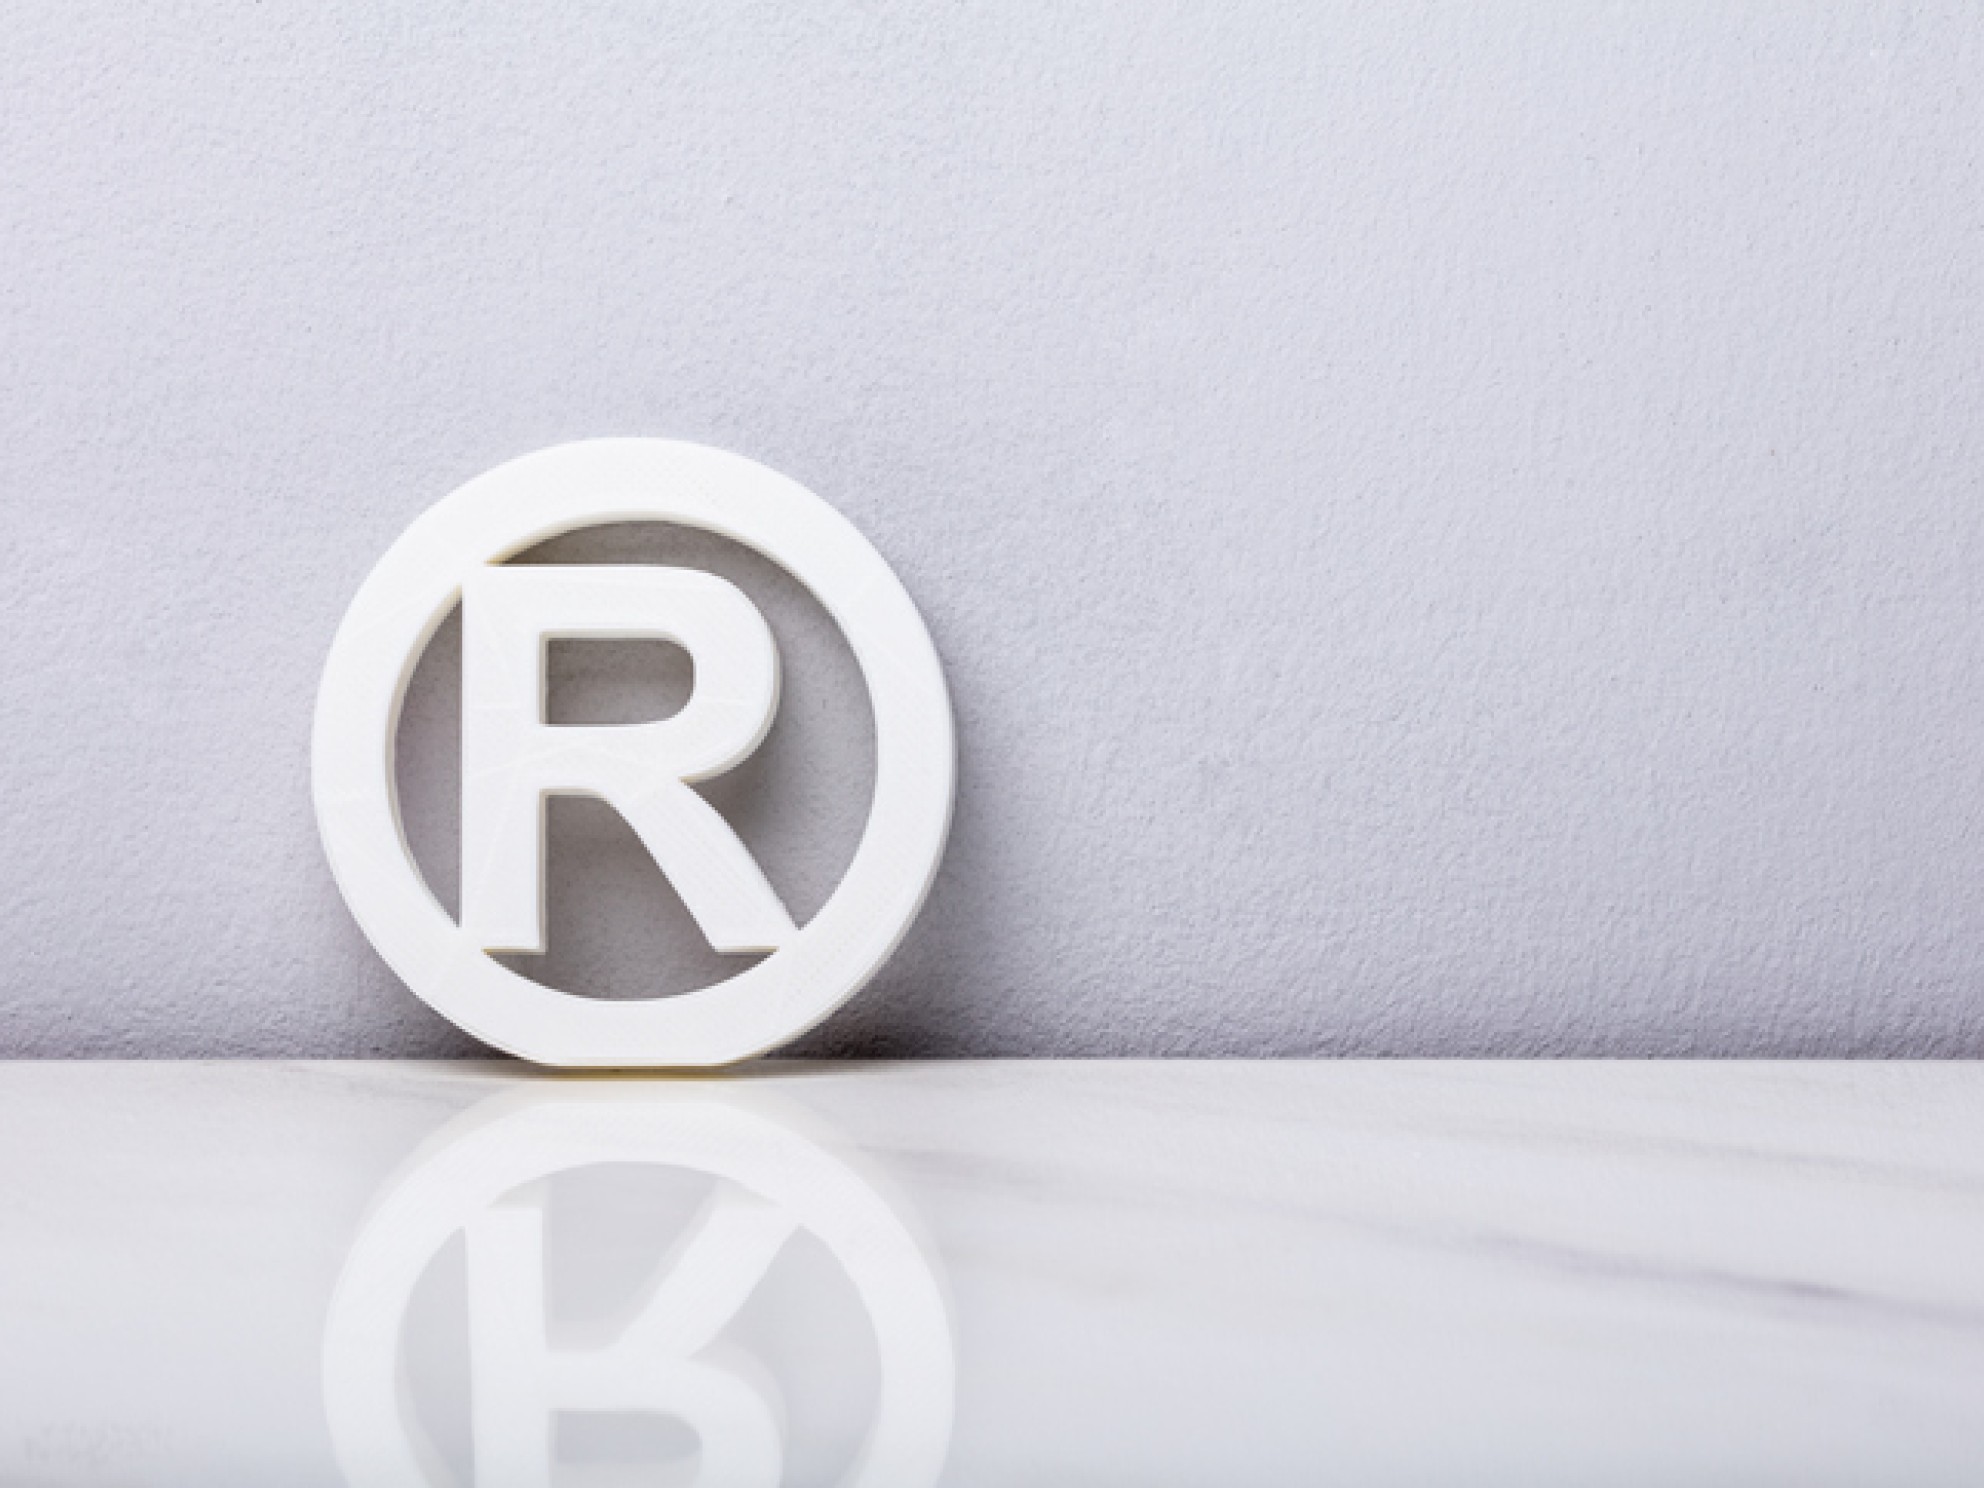 R i sirkel som er symbolet for registrert varemerke